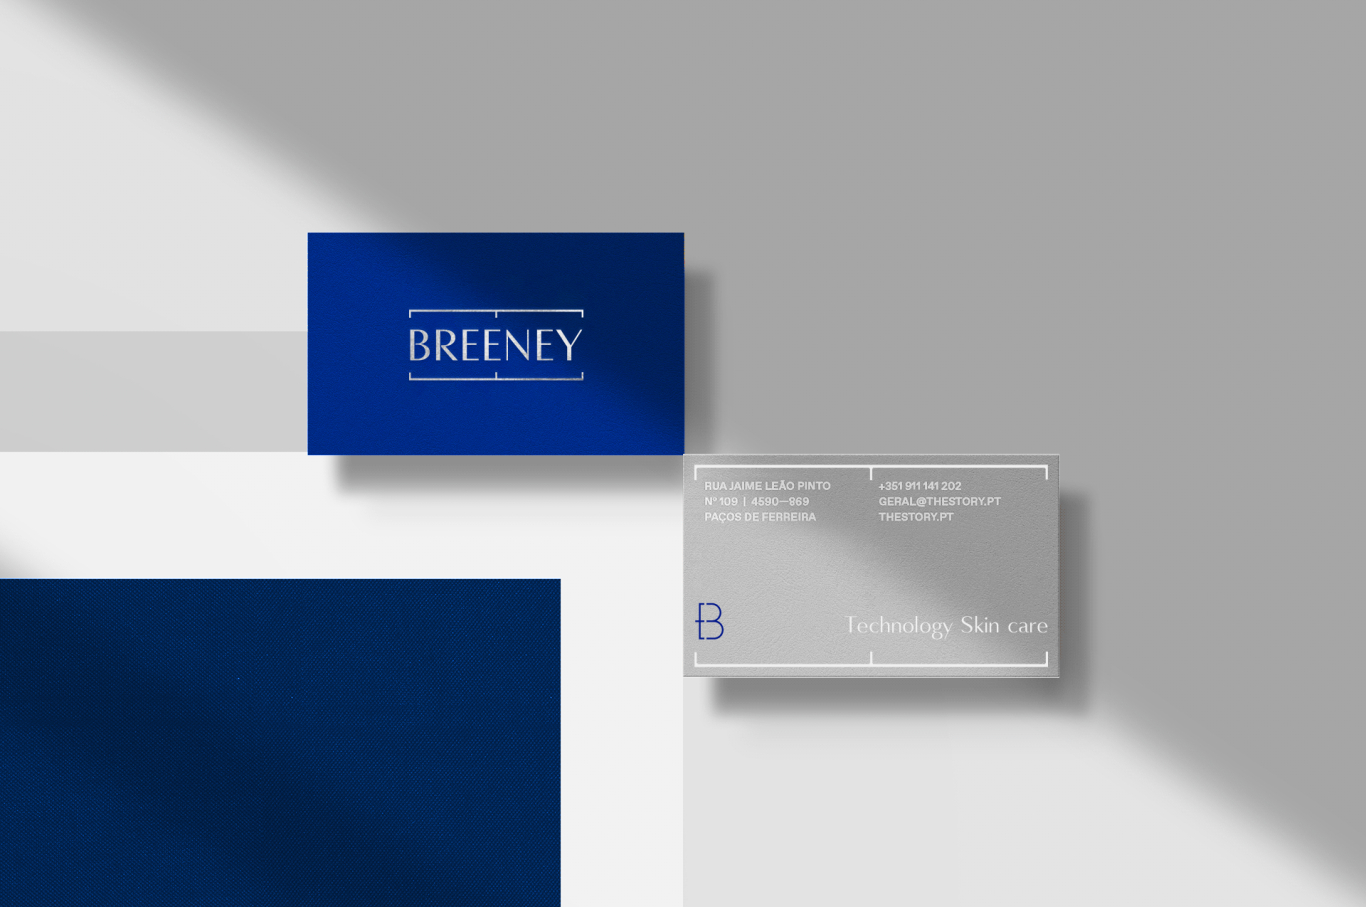 BREENEY护肤品品牌形象设计图11